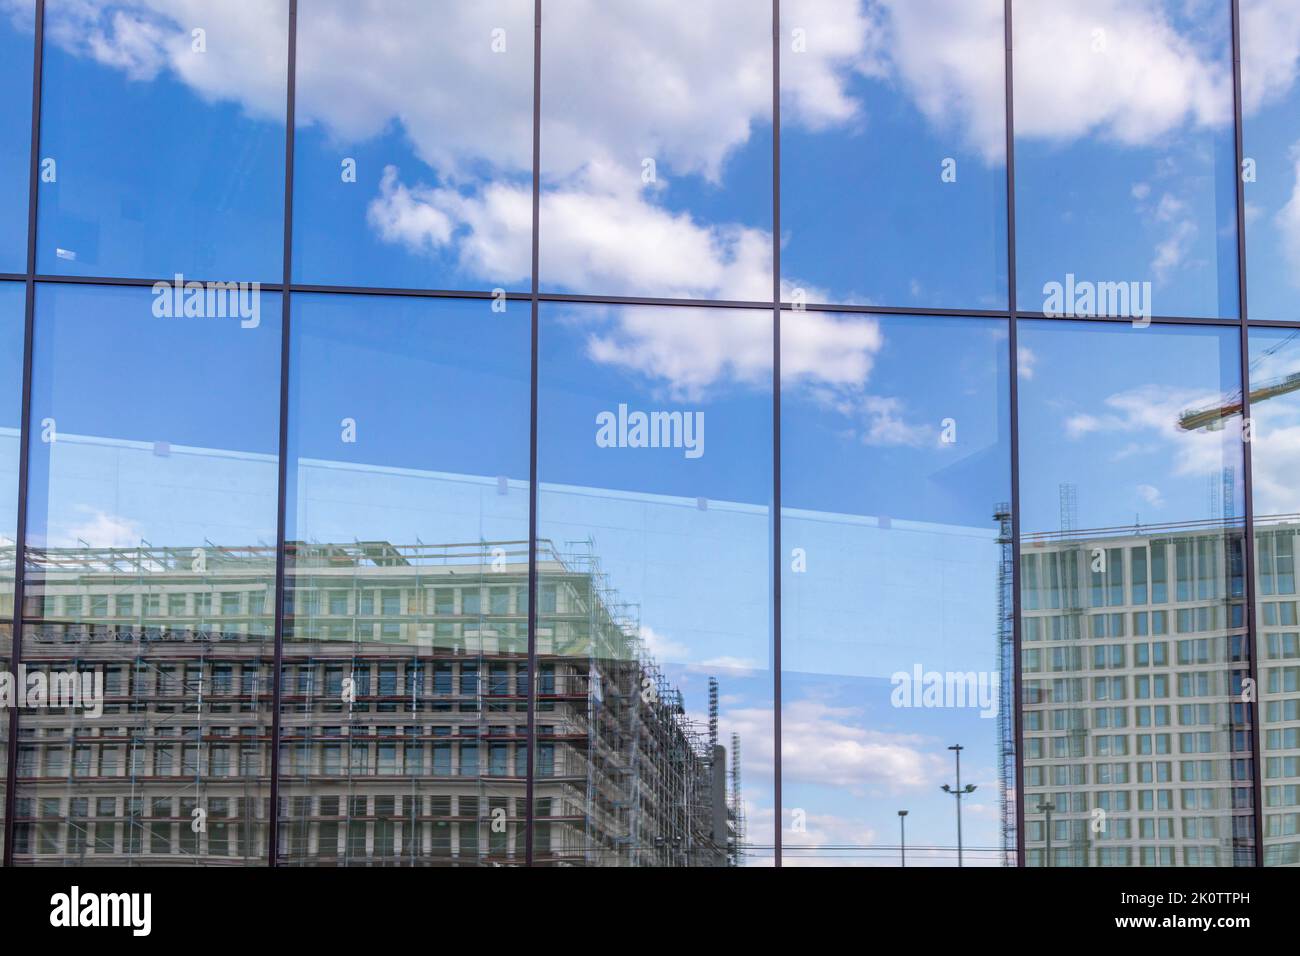 Reflet d'un grand chantier de construction avec de nouveaux bâtiments et un ciel légèrement nuageux dans une façade en verre d'un bâtiment moderne Banque D'Images